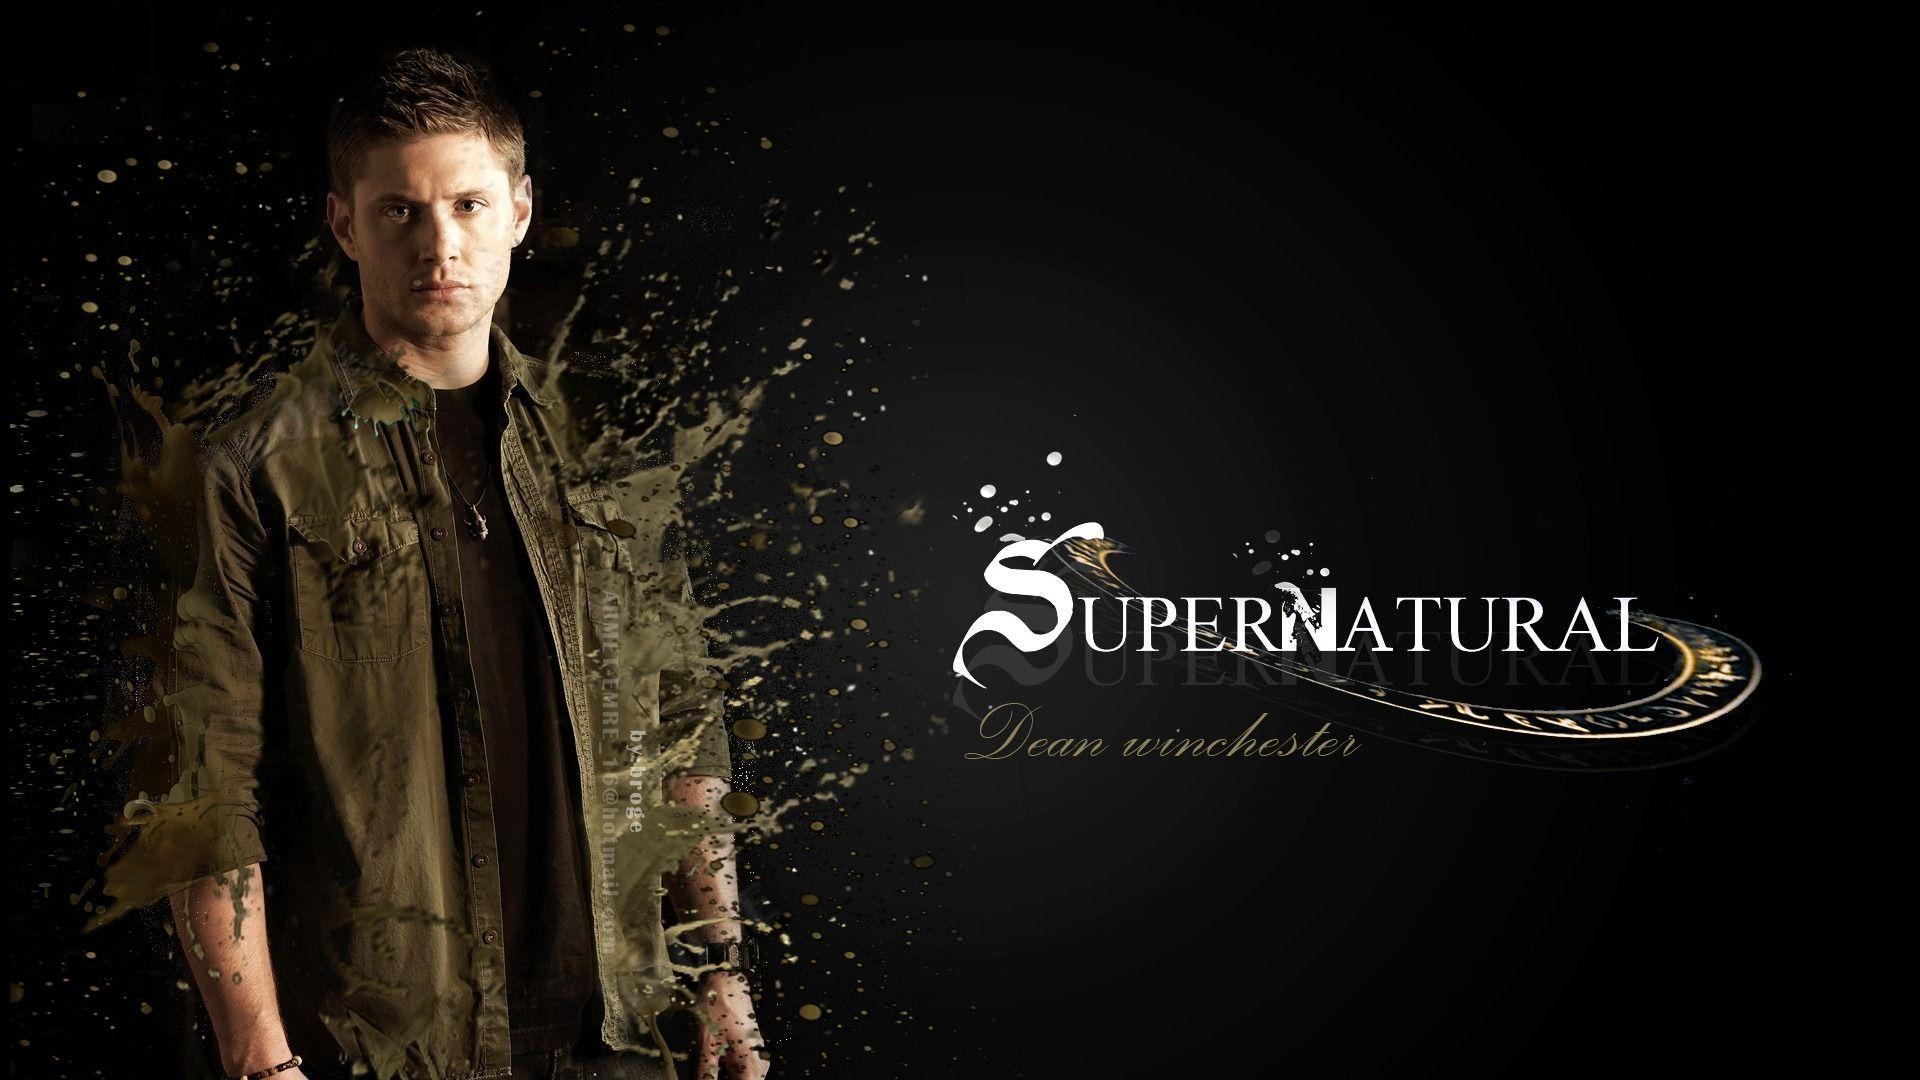 Dean Winchester Supernatural HD Wallpaper Wallpaper